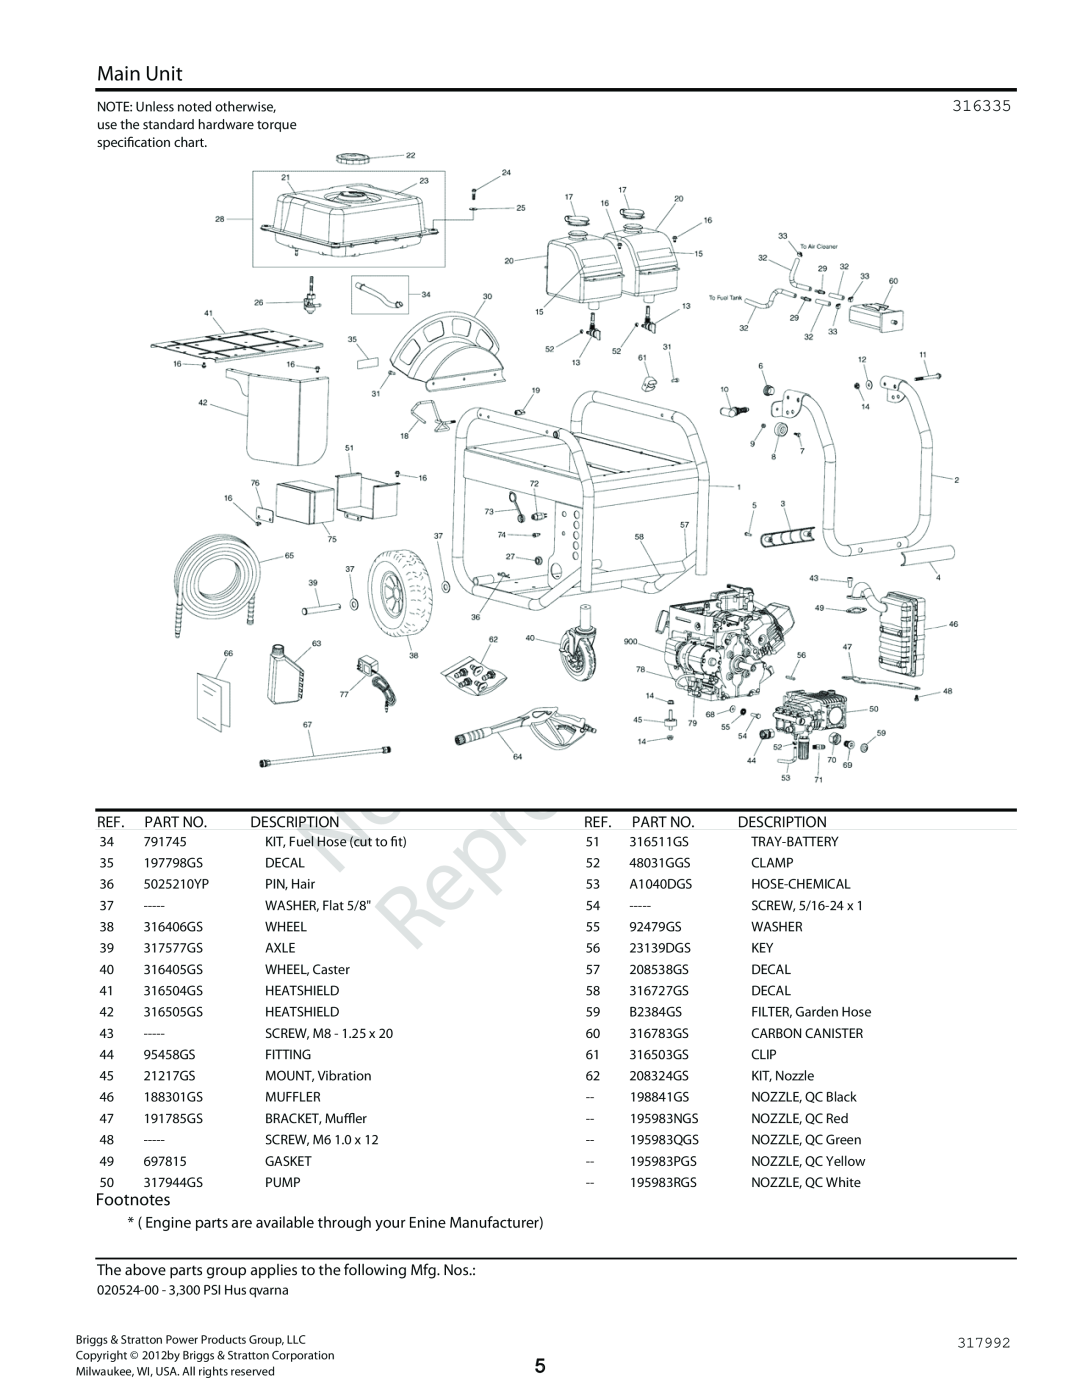 Husqvarna 300 PSI, 020524-00 3 manual Reproduction, Main Unit, 316335, Footnotes, Description 